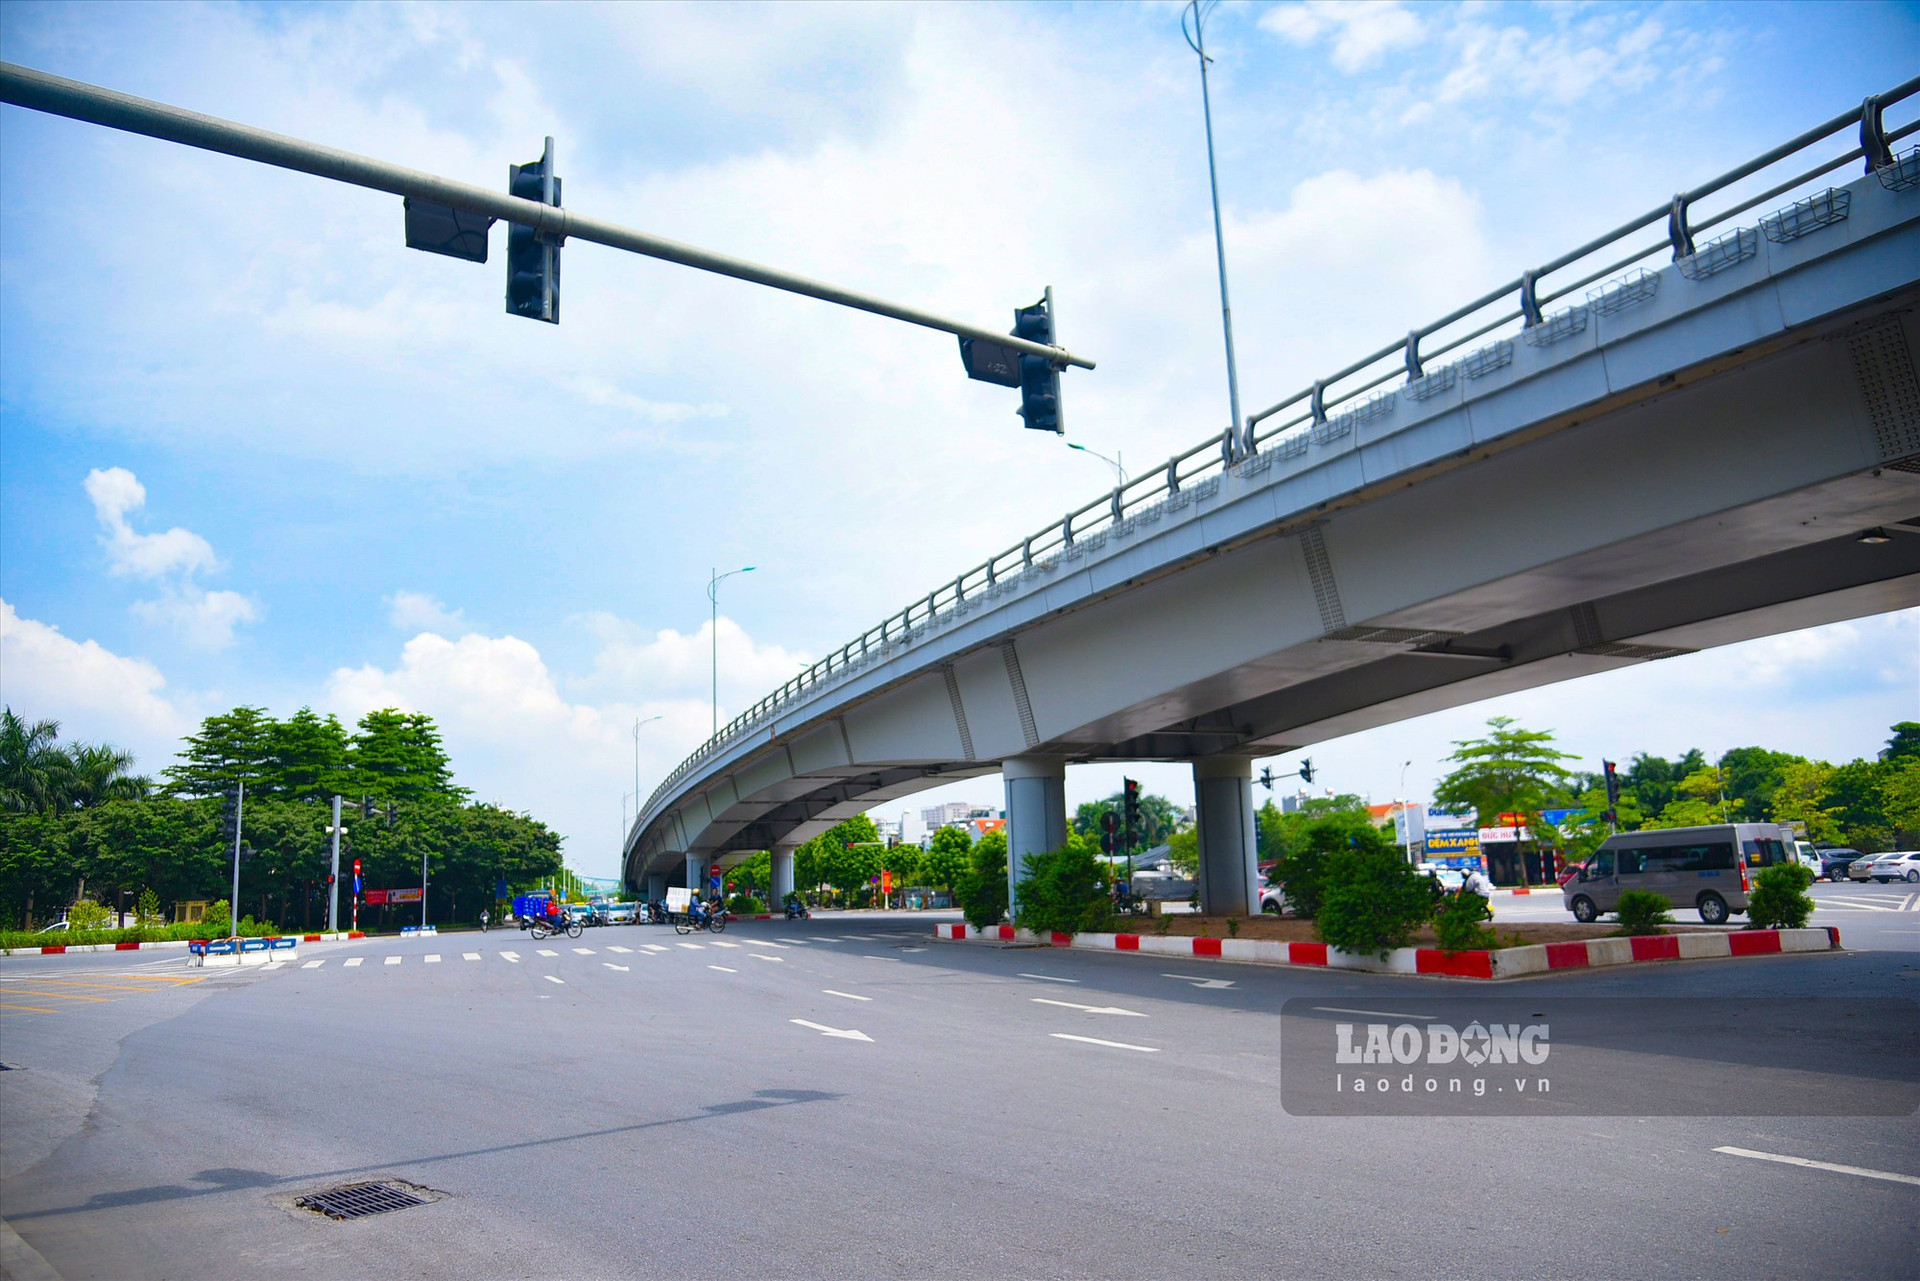 Khi hoàn thành dự án và thông xe, nút giao Cổ Linh - đường dẫn cầu Vĩnh Tuy sẽ là nút giao có 3 tầng đường, gồm: cầu vượt, đường ở nút giao hiện hữu và hầm chui.